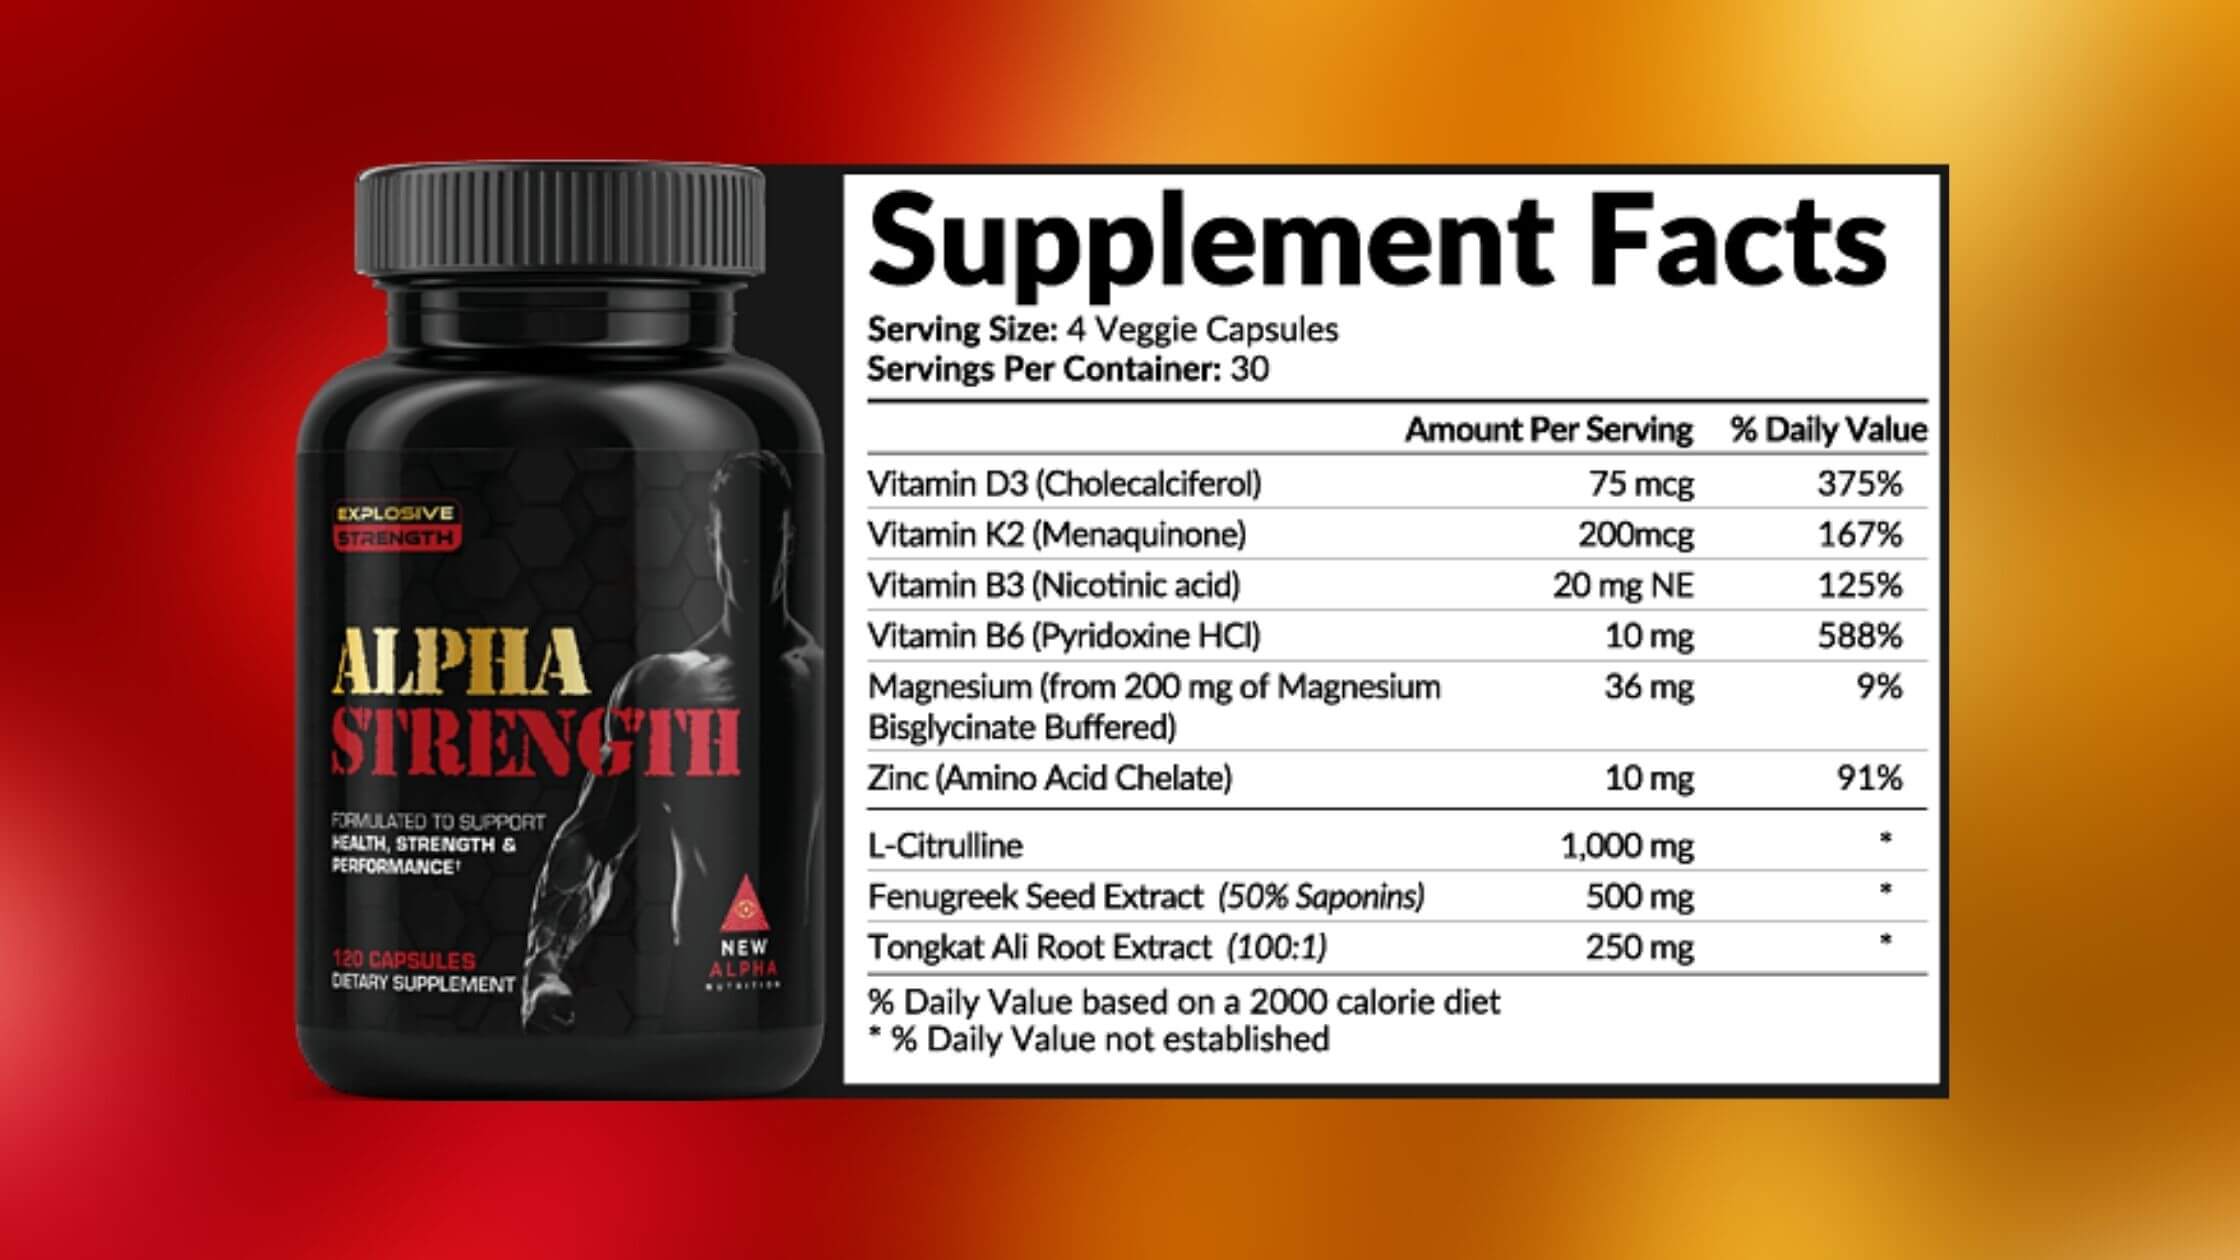 Alpha Strength Supplement Facts